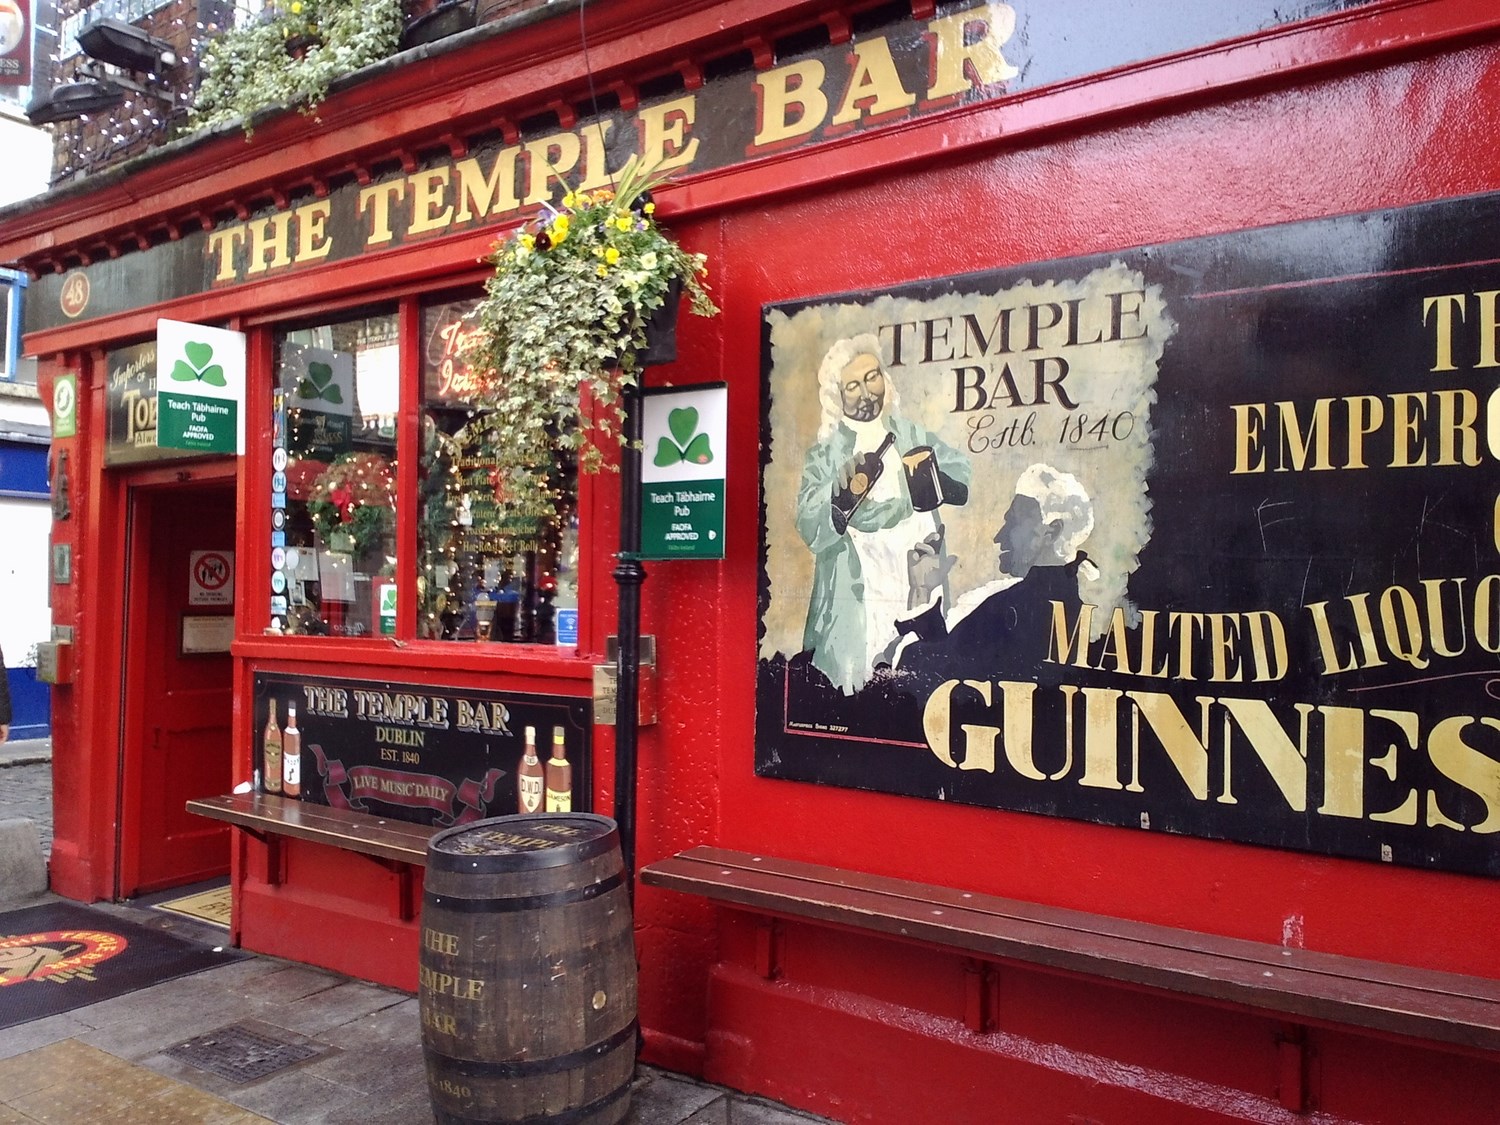 Dublin Temple Bar